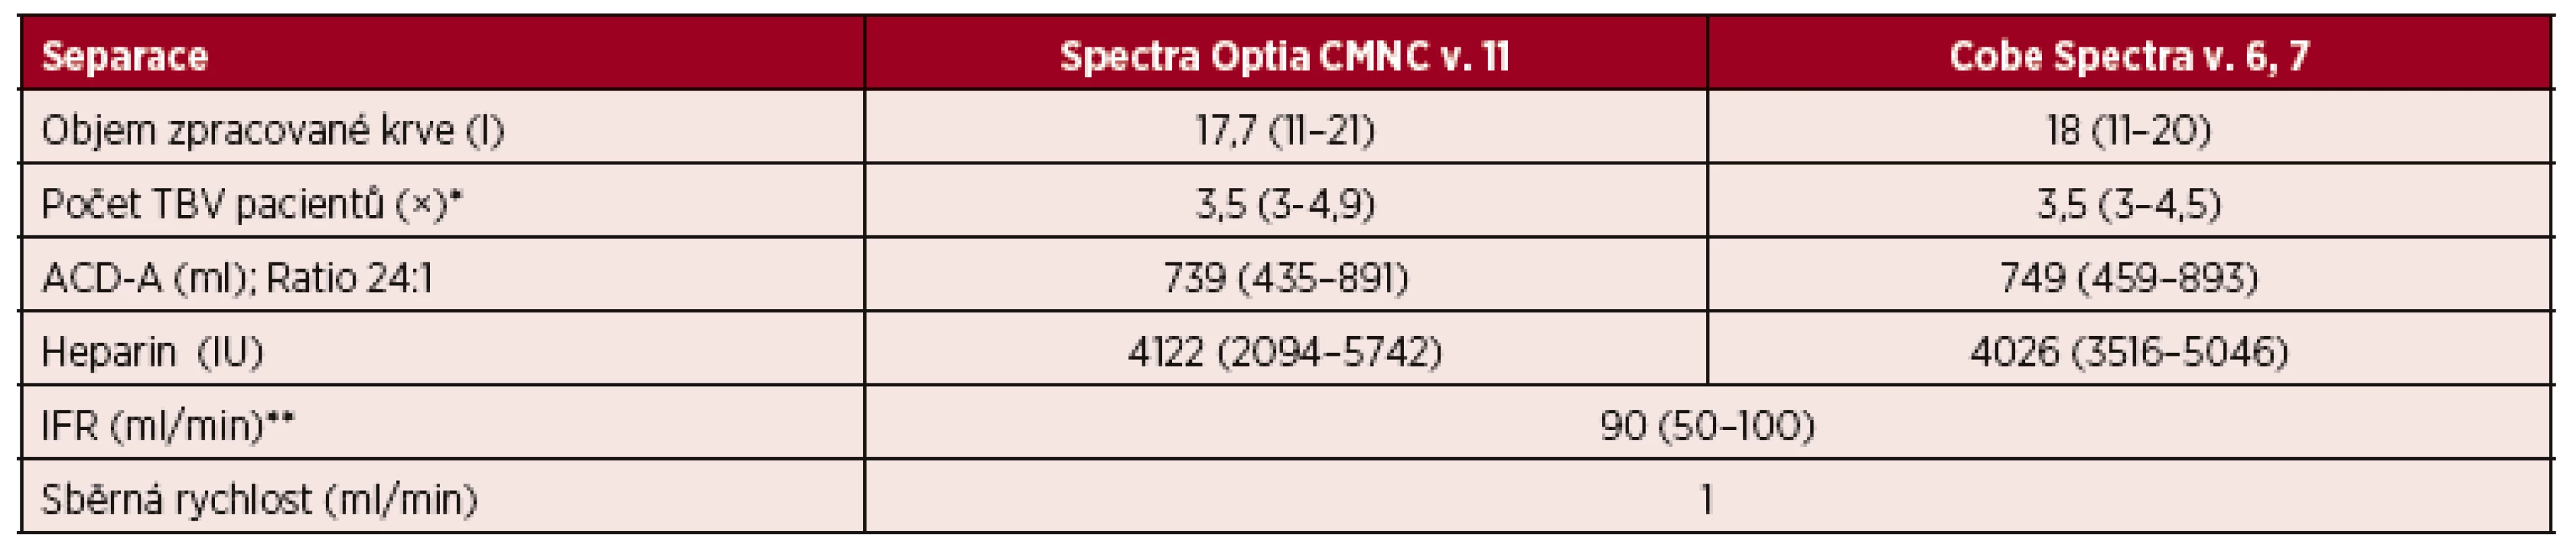 Velkoobjemové separace (LVL) PBPC autologní – separační parametry CMNC Spectra Optia 
a Cobe Spectra